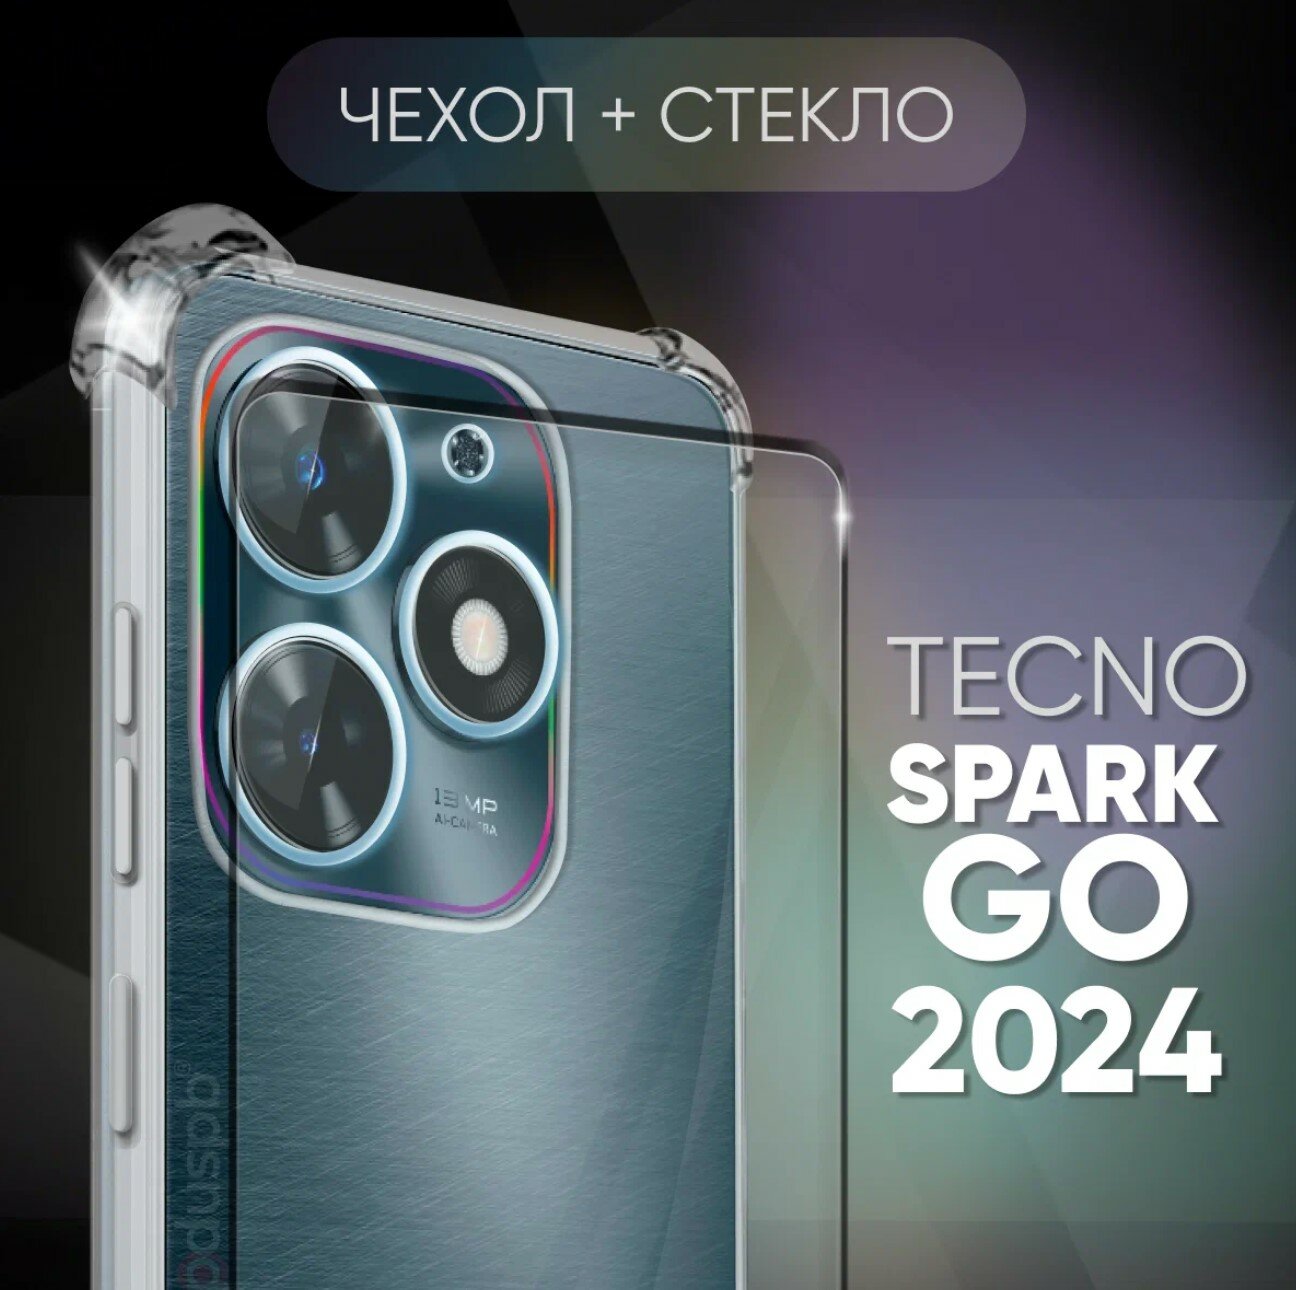 Комплект 2 в 1: Чехол №03 + стекло для Tecno spark go 2024 / противоударный силиконовый прозрачный клип-кейс с защитой камеры и углов на Техно спарк го 2024